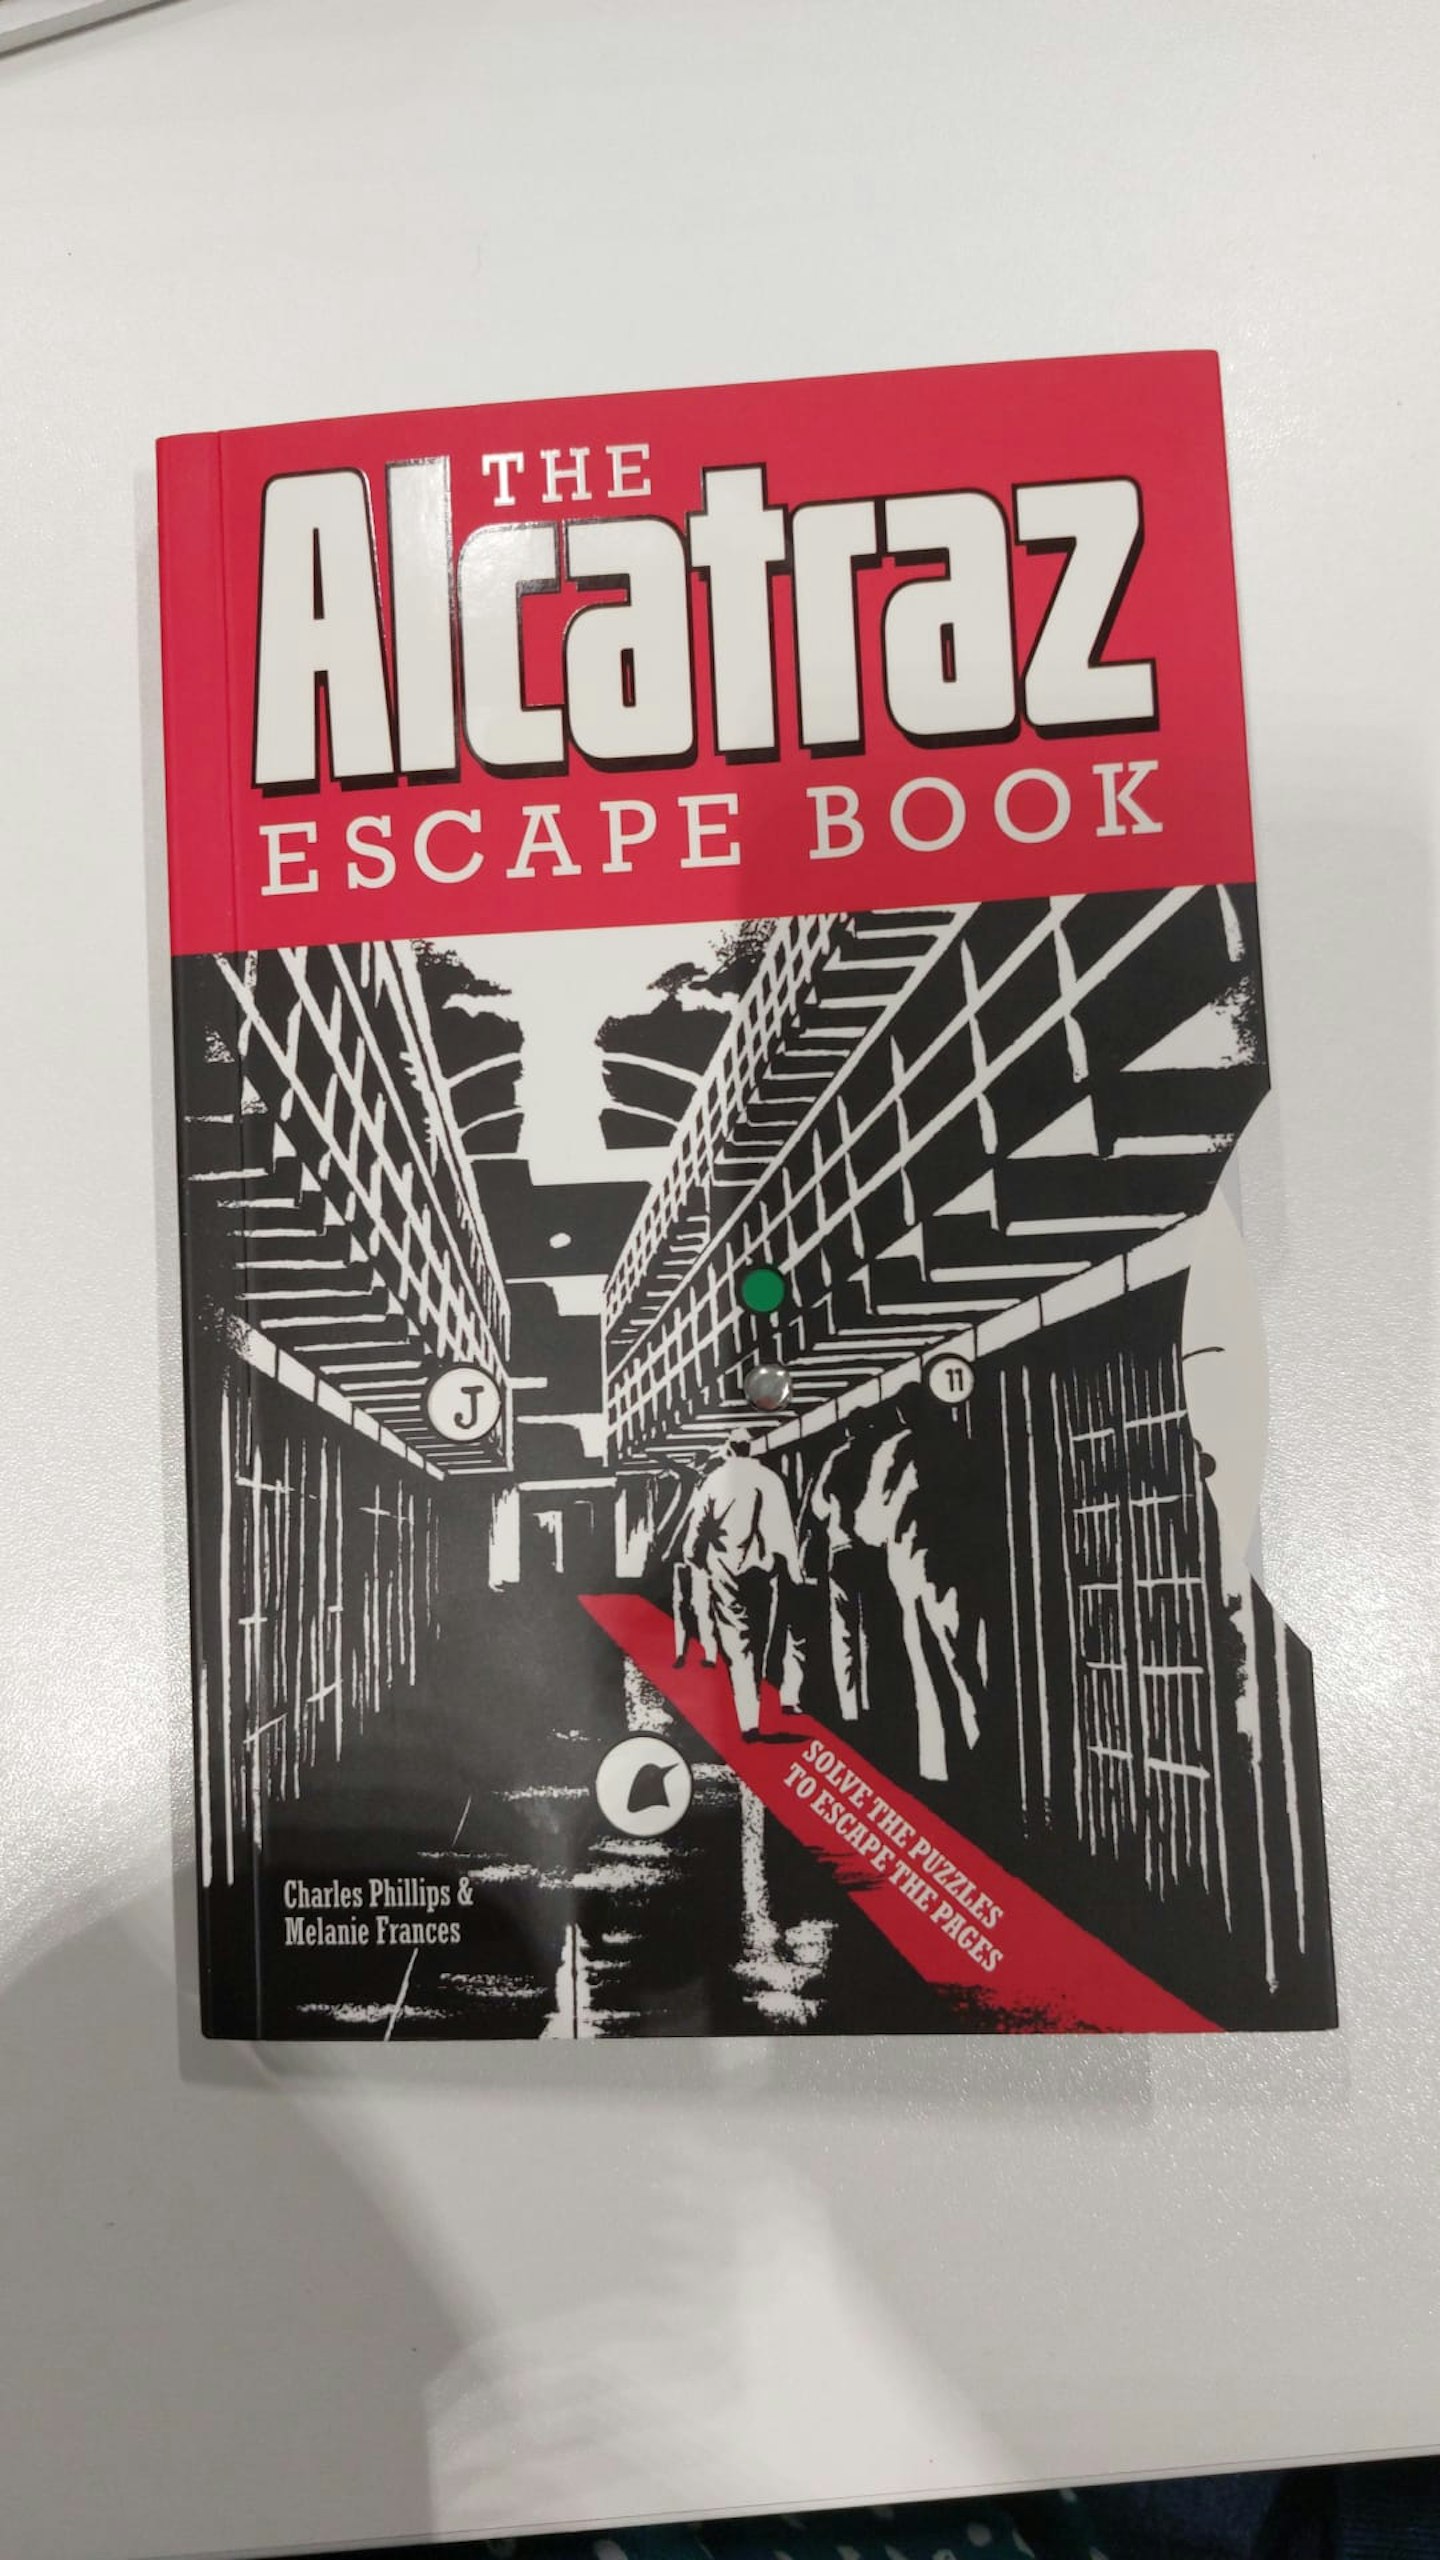 The Alcatraz Escape Book cover